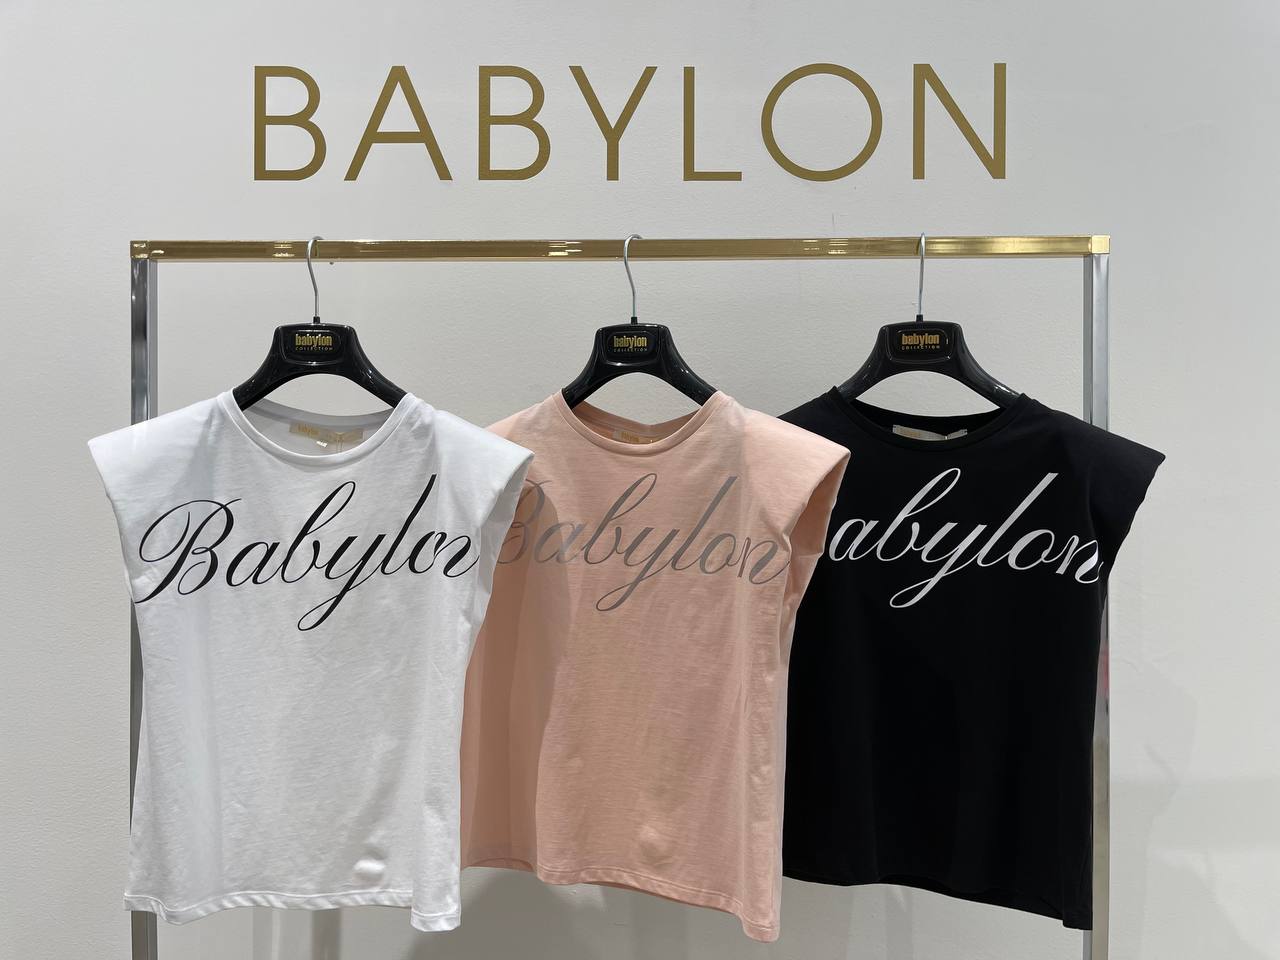 Итальянская одежда, бренд Babylon, арт. 73262356